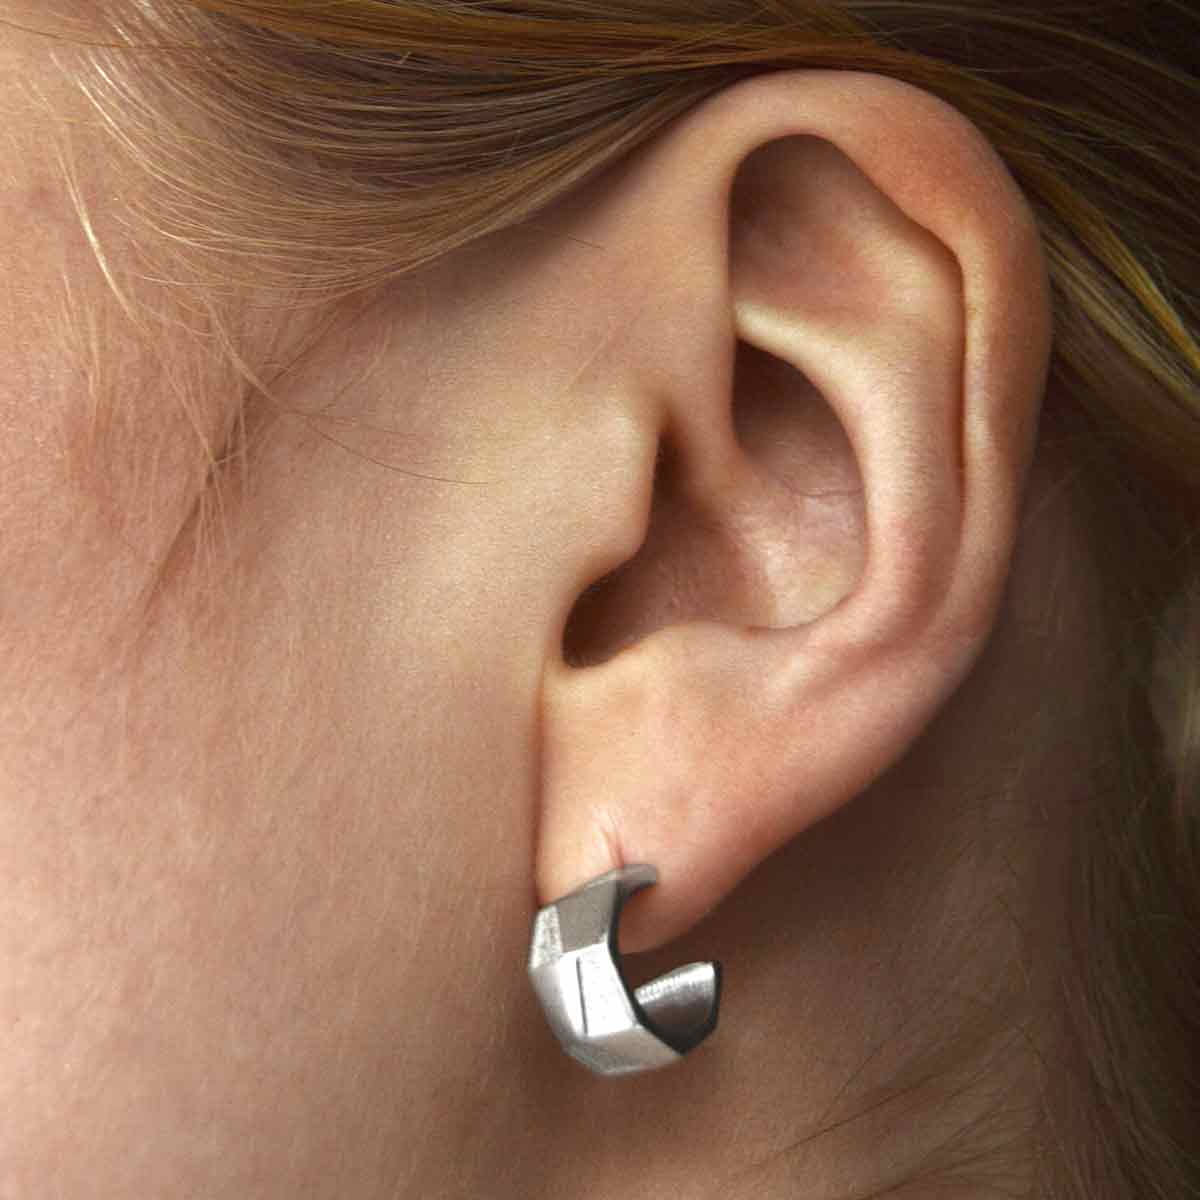 antarktis earrings mini hoop sterling silver 935 model